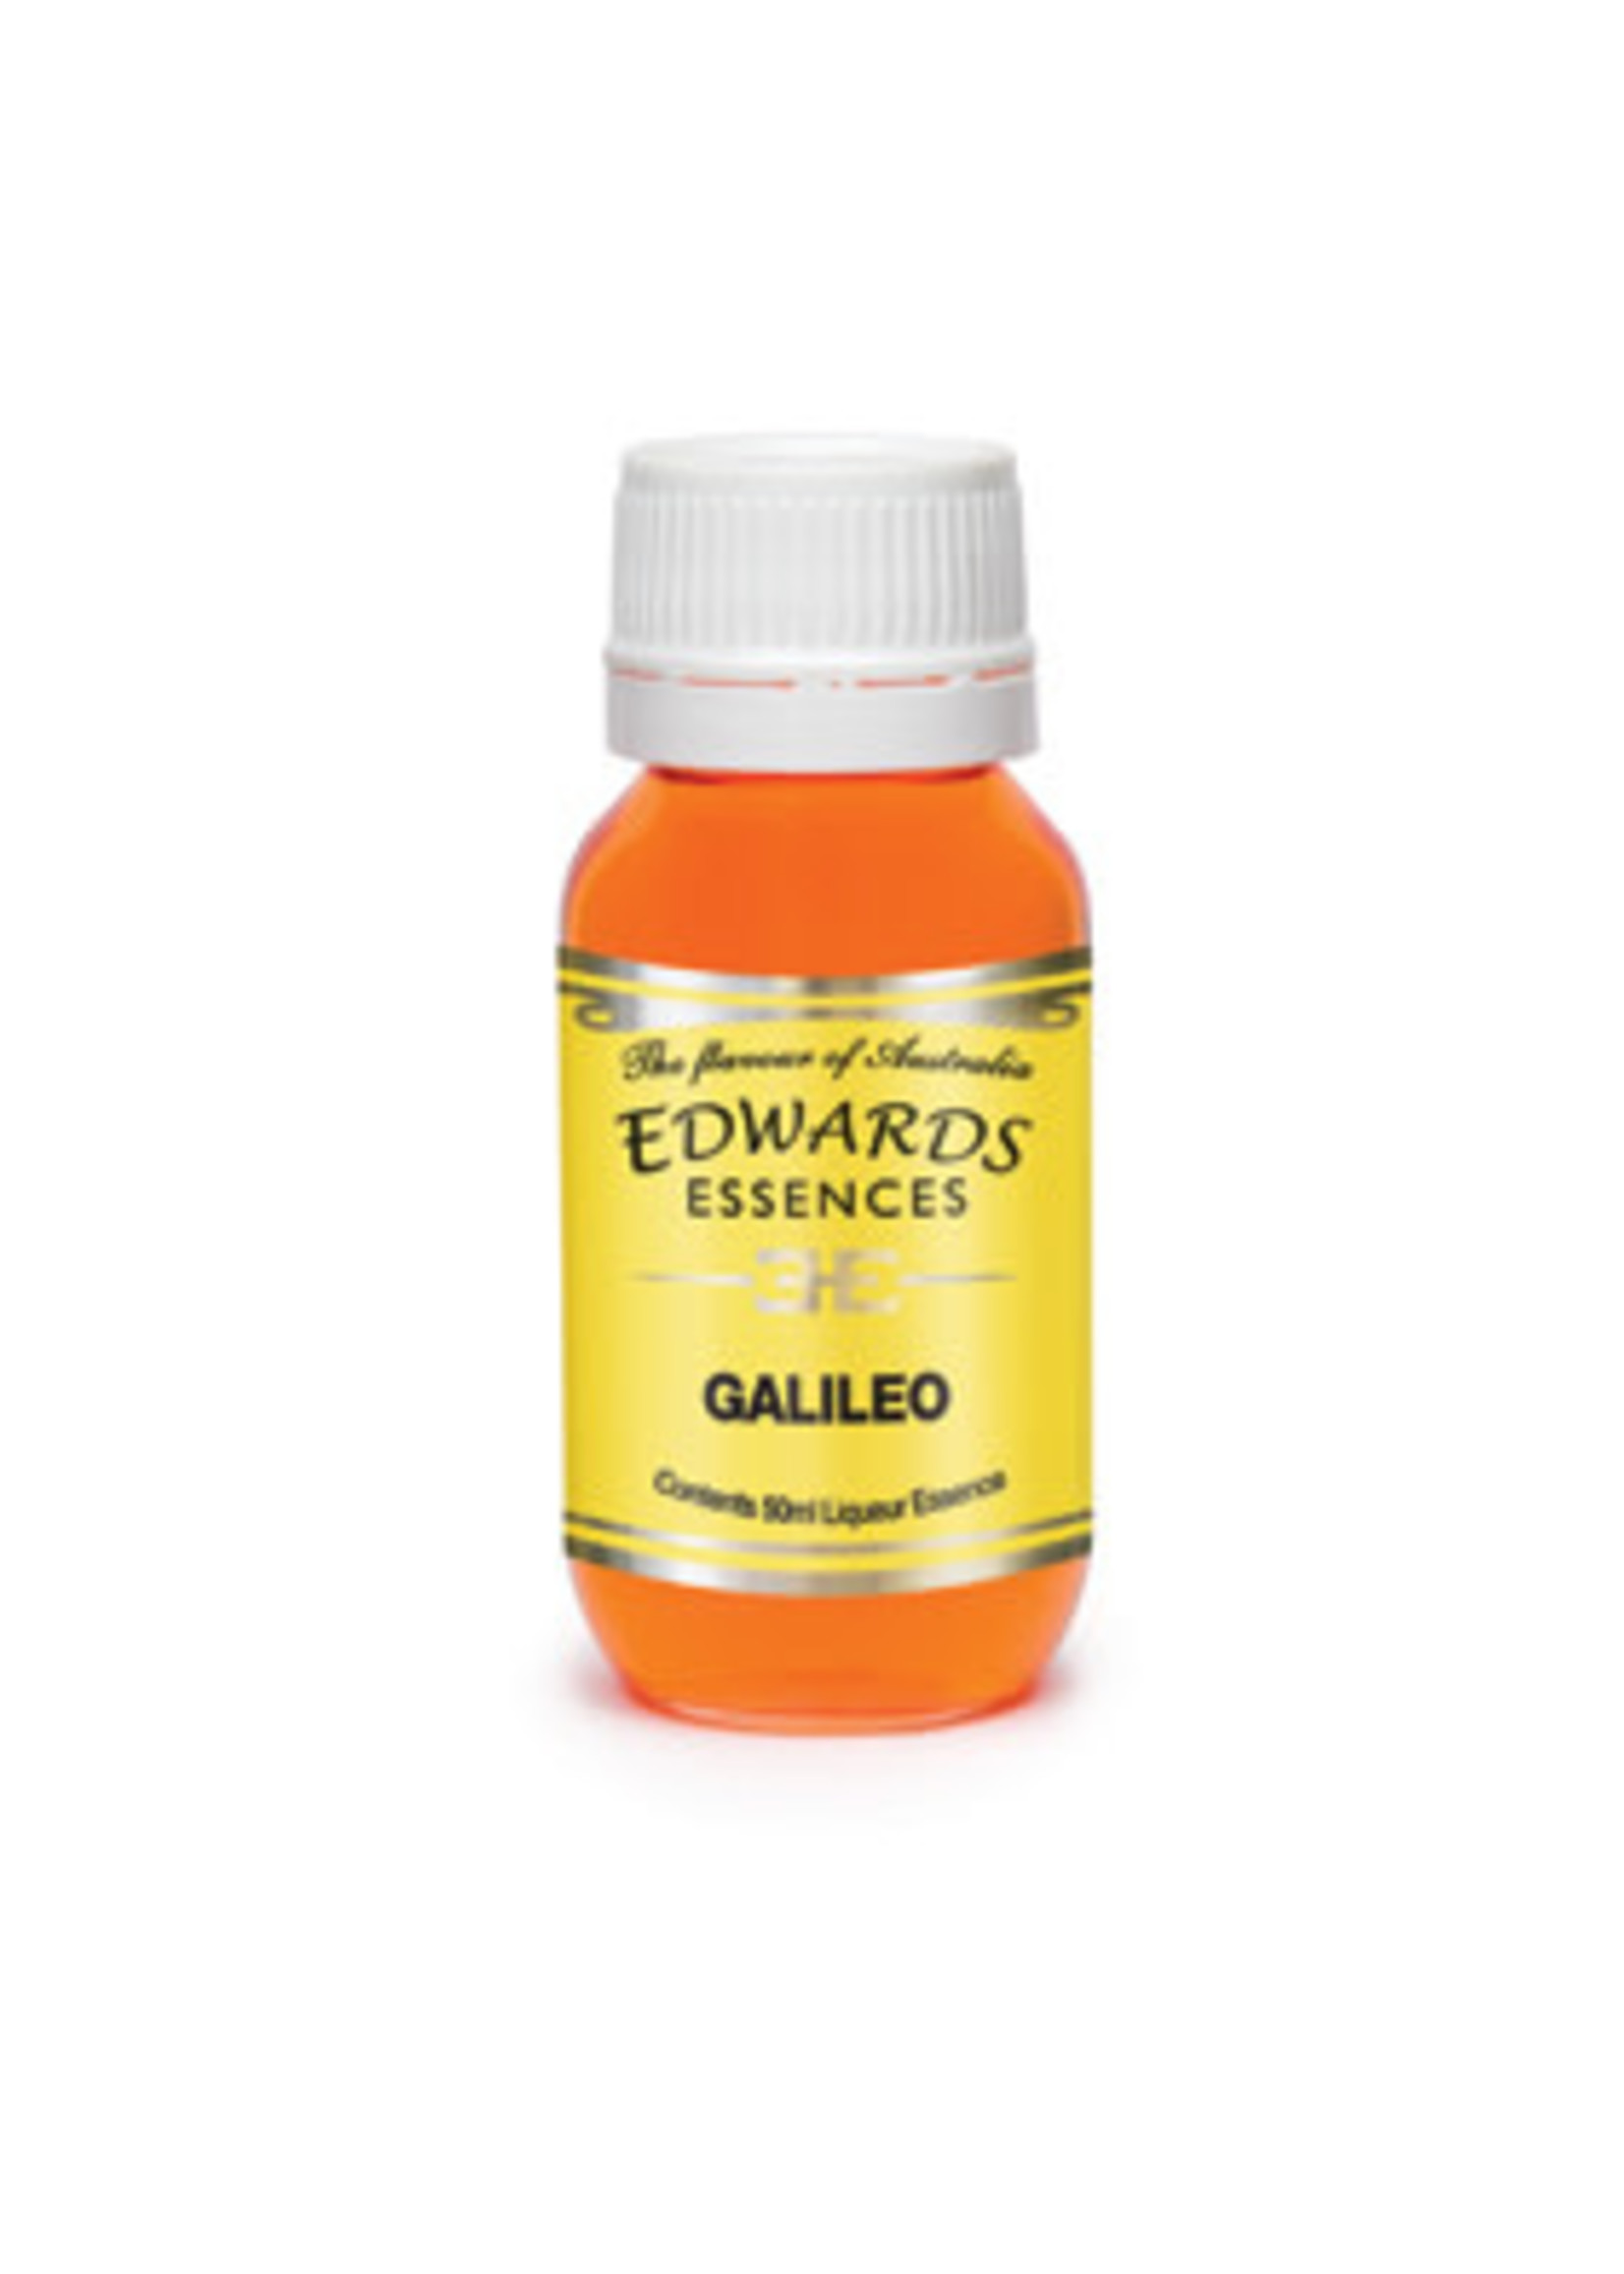 Edwards Essences Edwards Essences Galileo 50ml